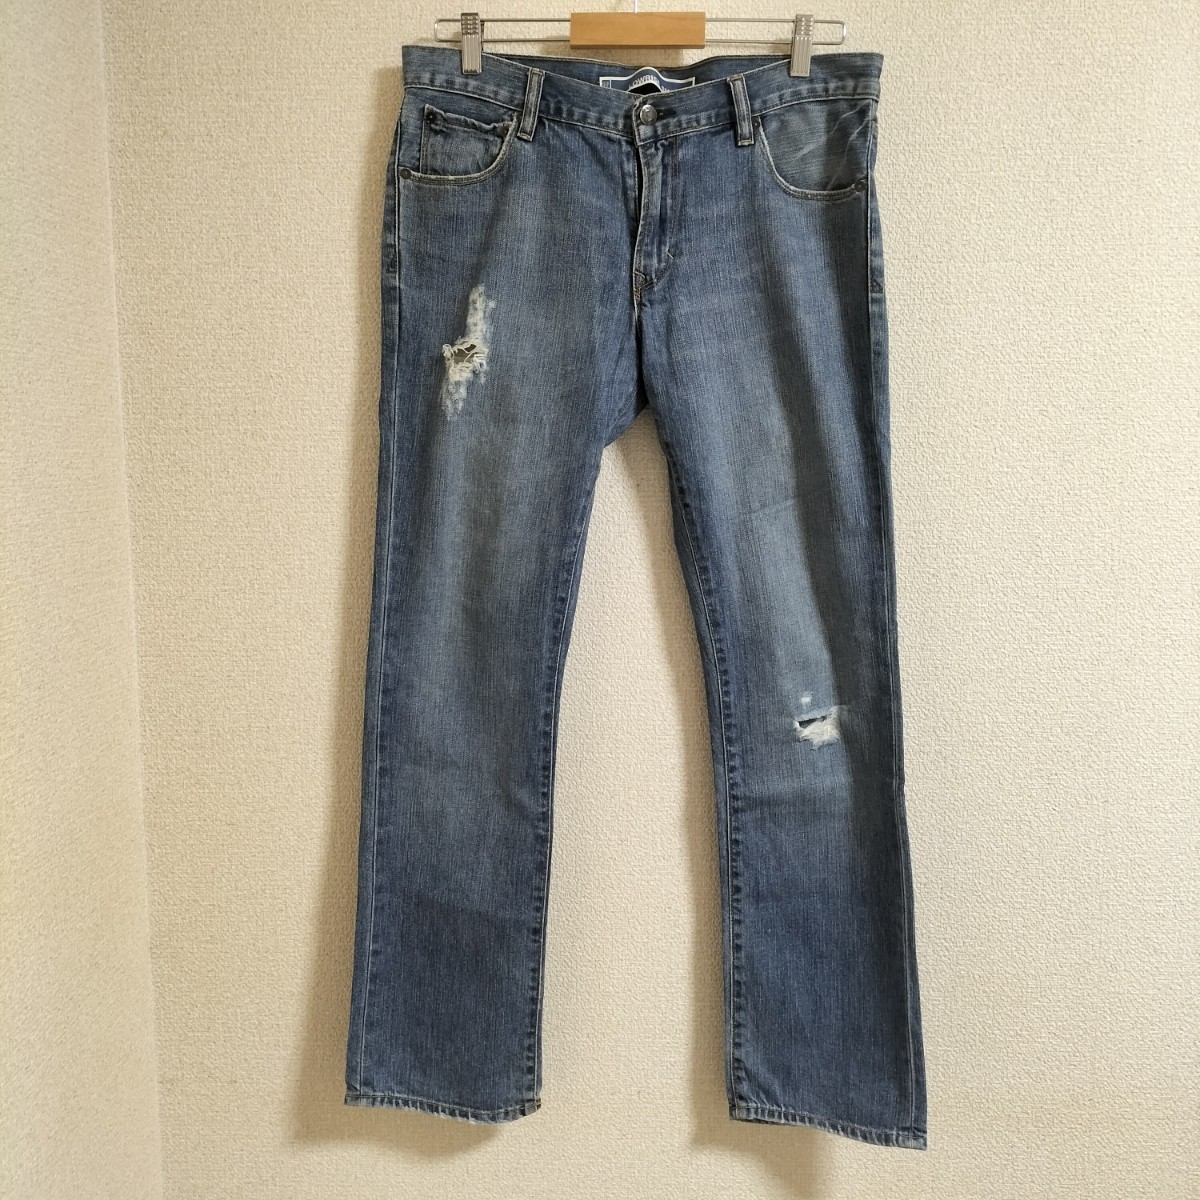 *OLD GAP 2010 год производства Denim брюки обтягивающий повреждение джинсы ji- хлеб низ Gap Old Vintage редкость бренд б/у одежда USED